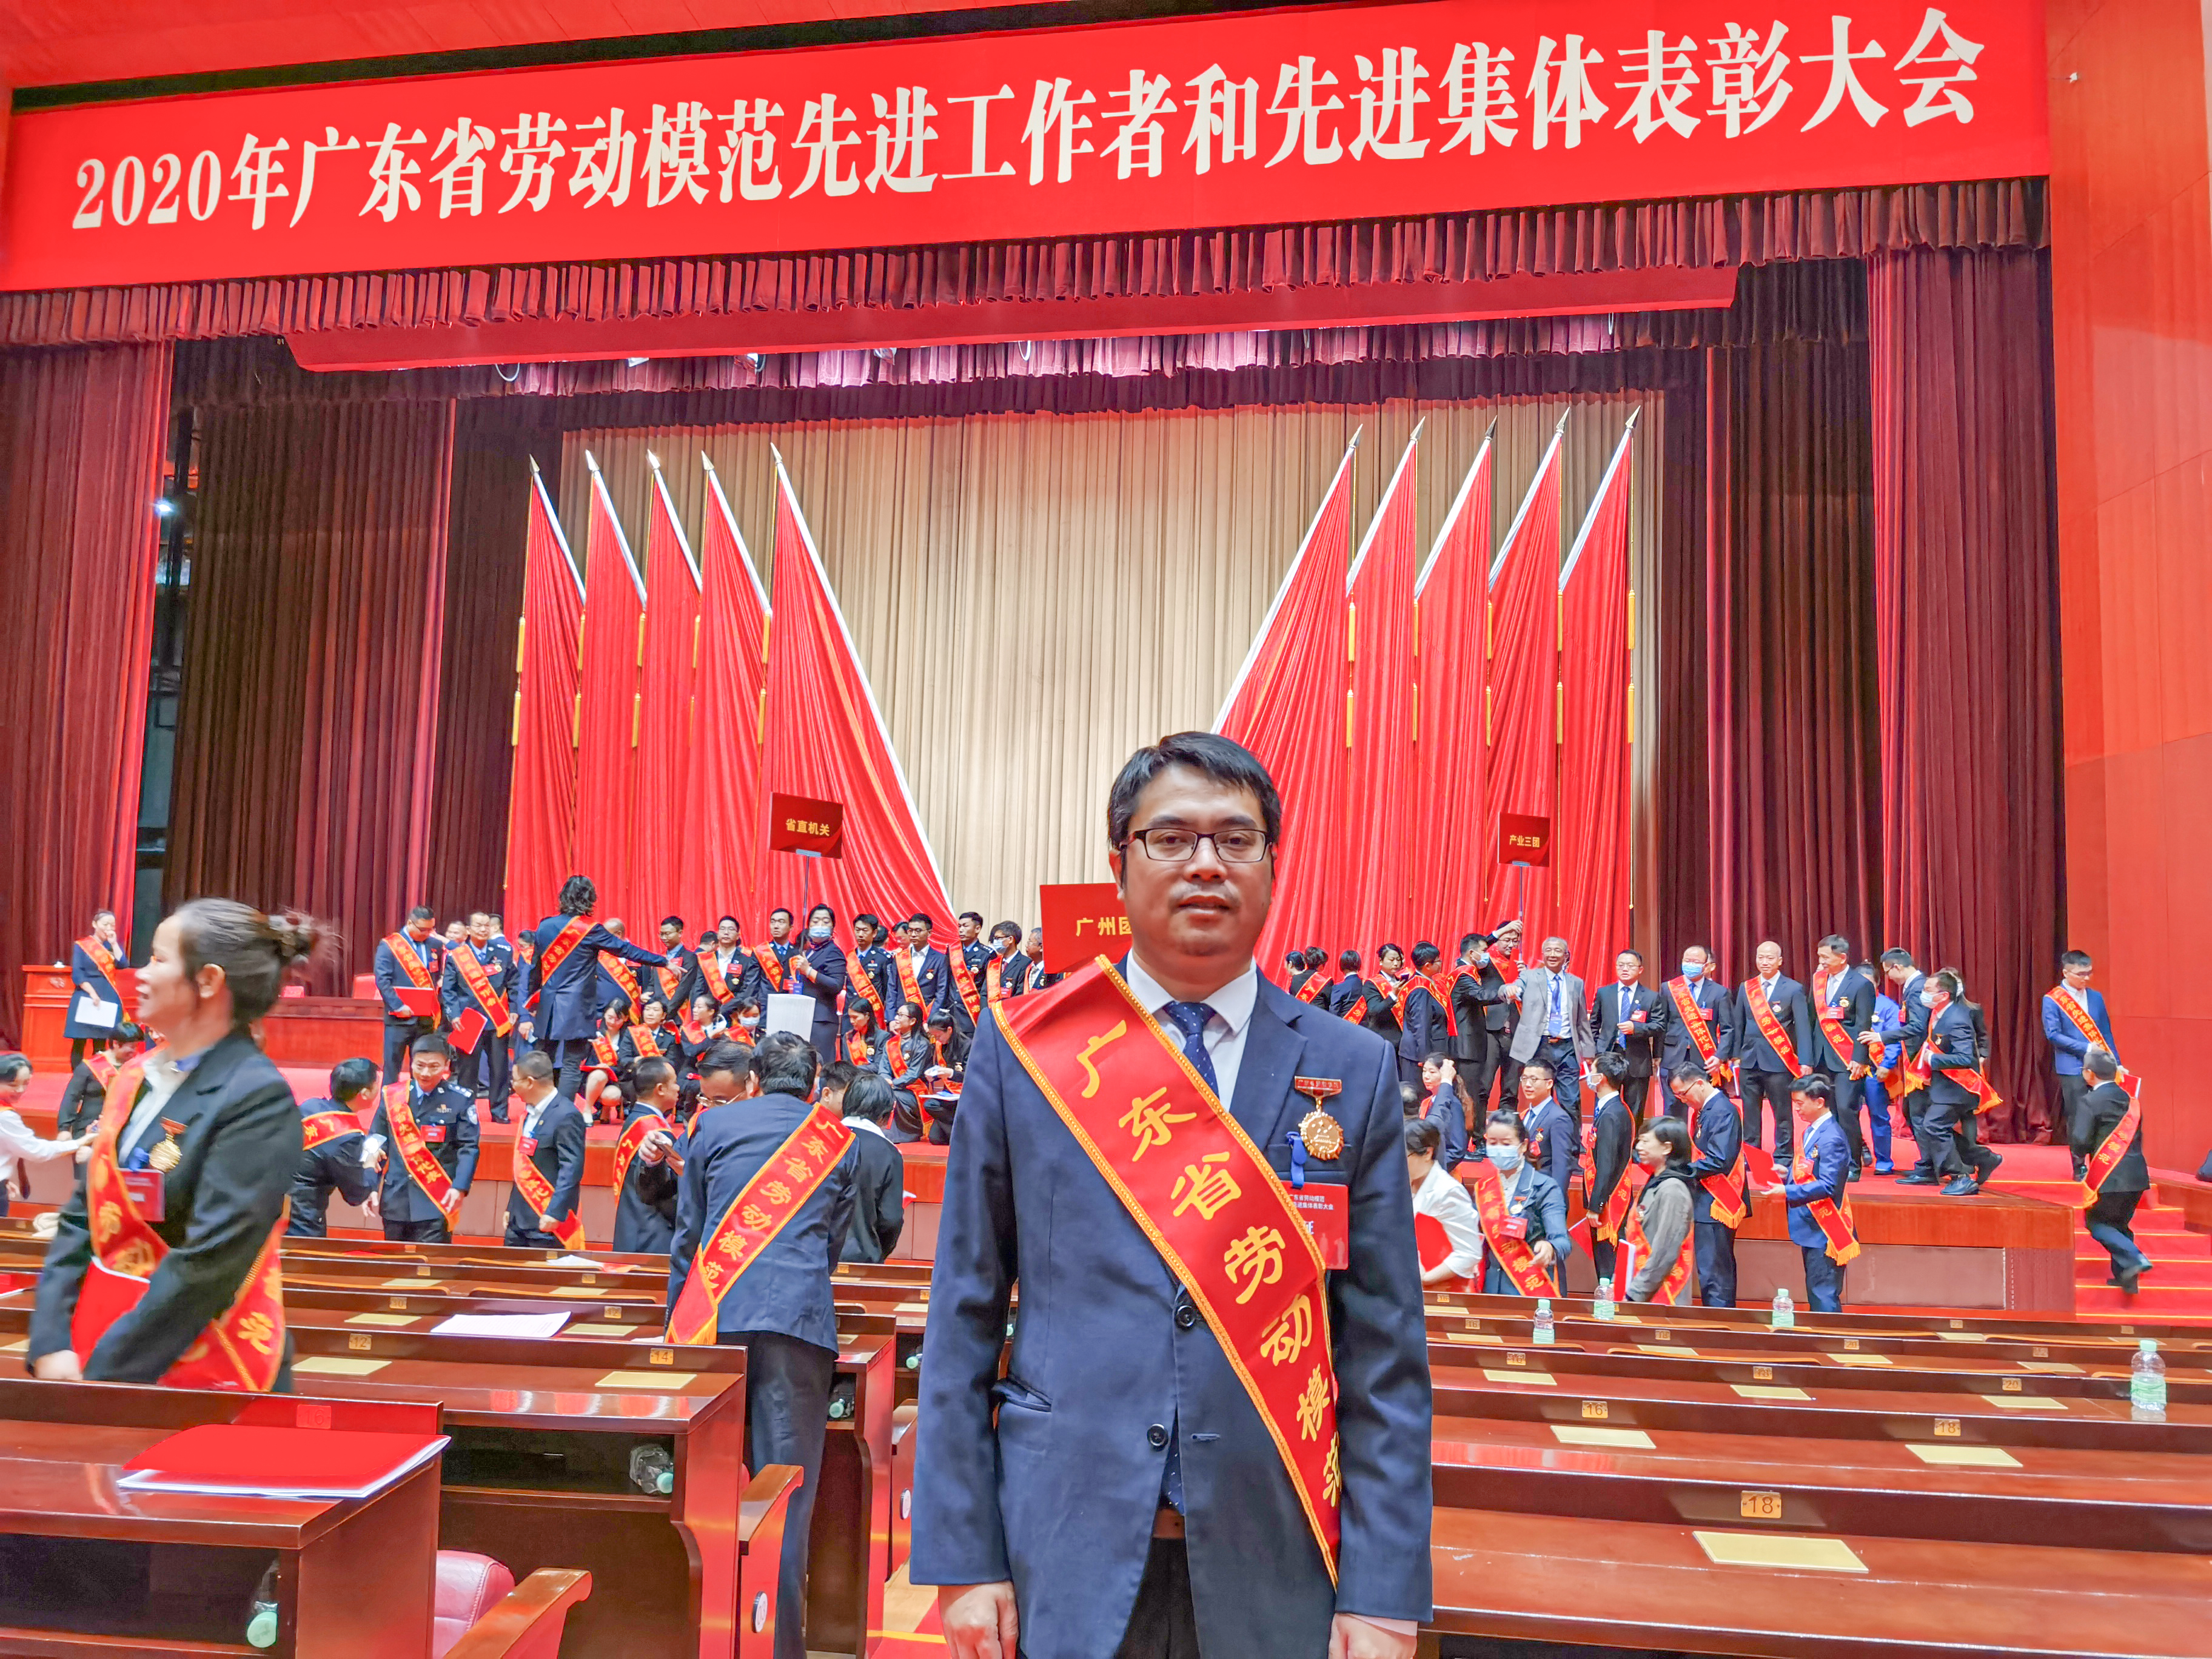 愛崗敬業積極抗疫 安多福周海林獲得“廣東省勞動模范”榮譽稱號